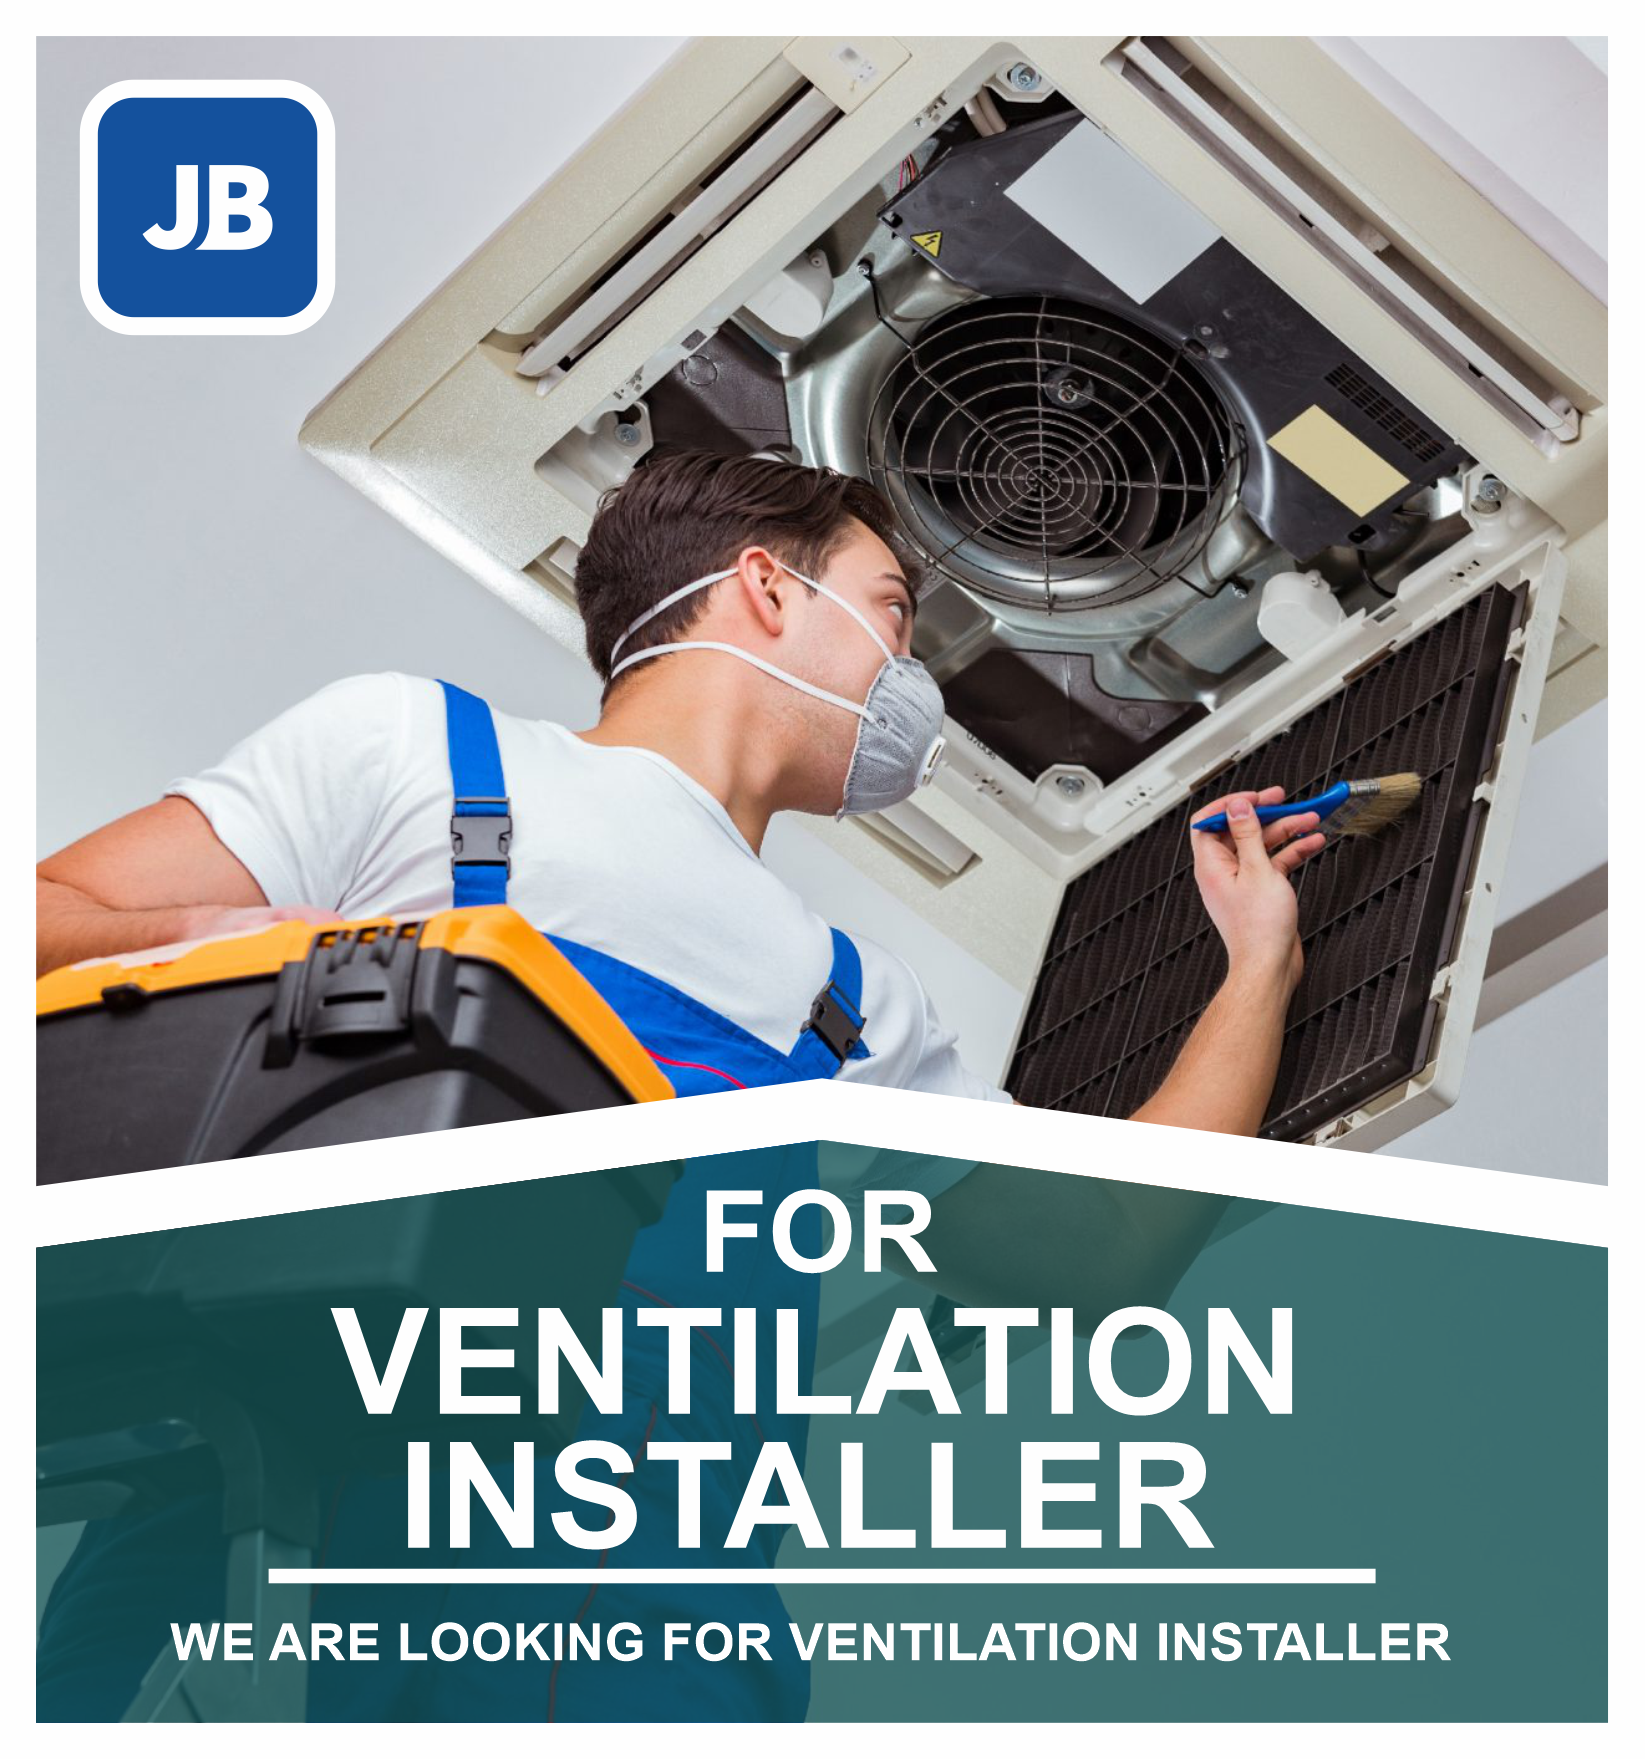 Ventilation Installer Job